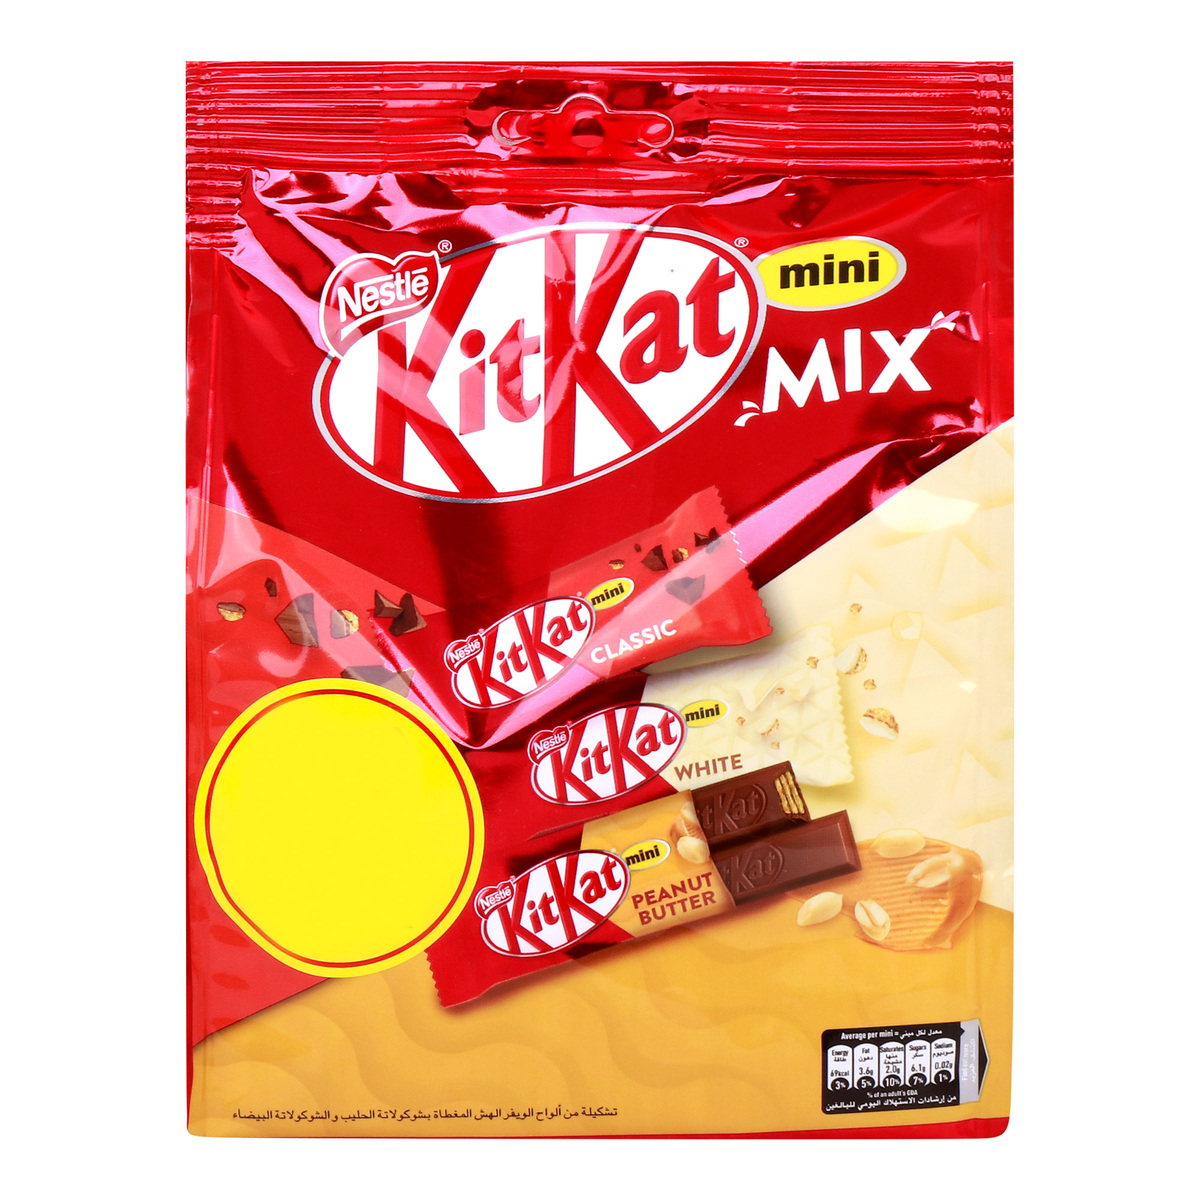 Nestle KitKat Mini Mix Chocolates Value Pack 188 g